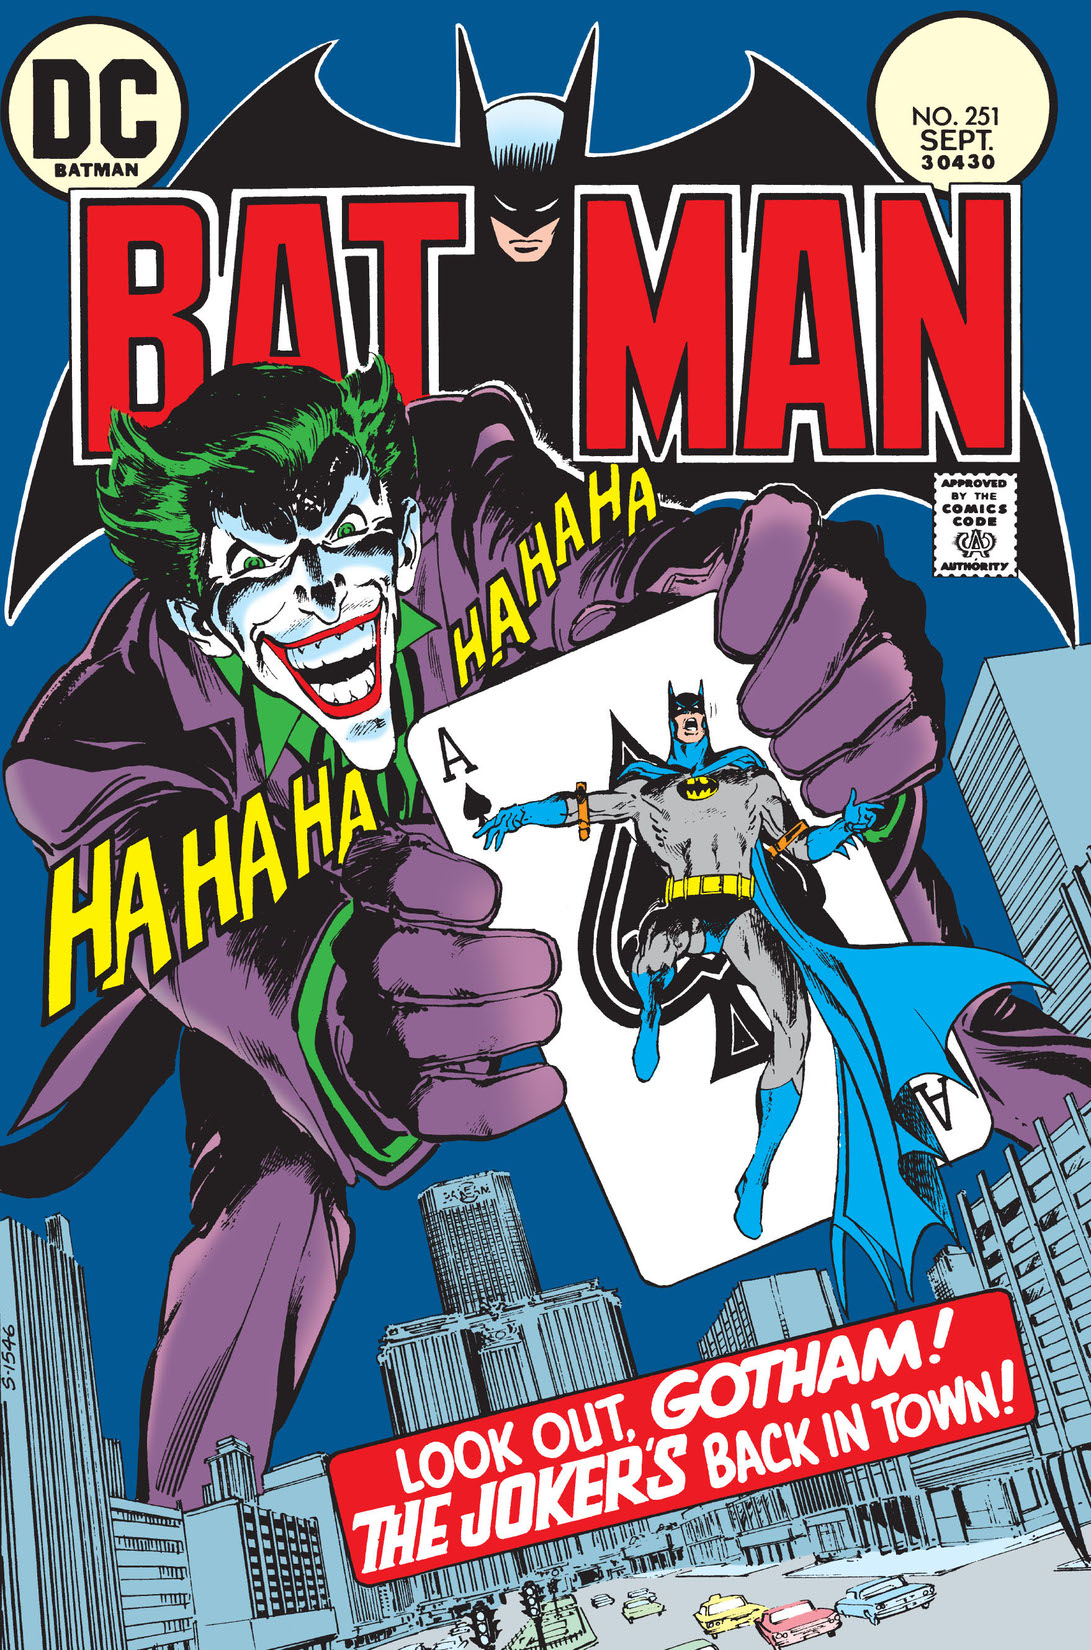 Batman (1940-) #251 preview images